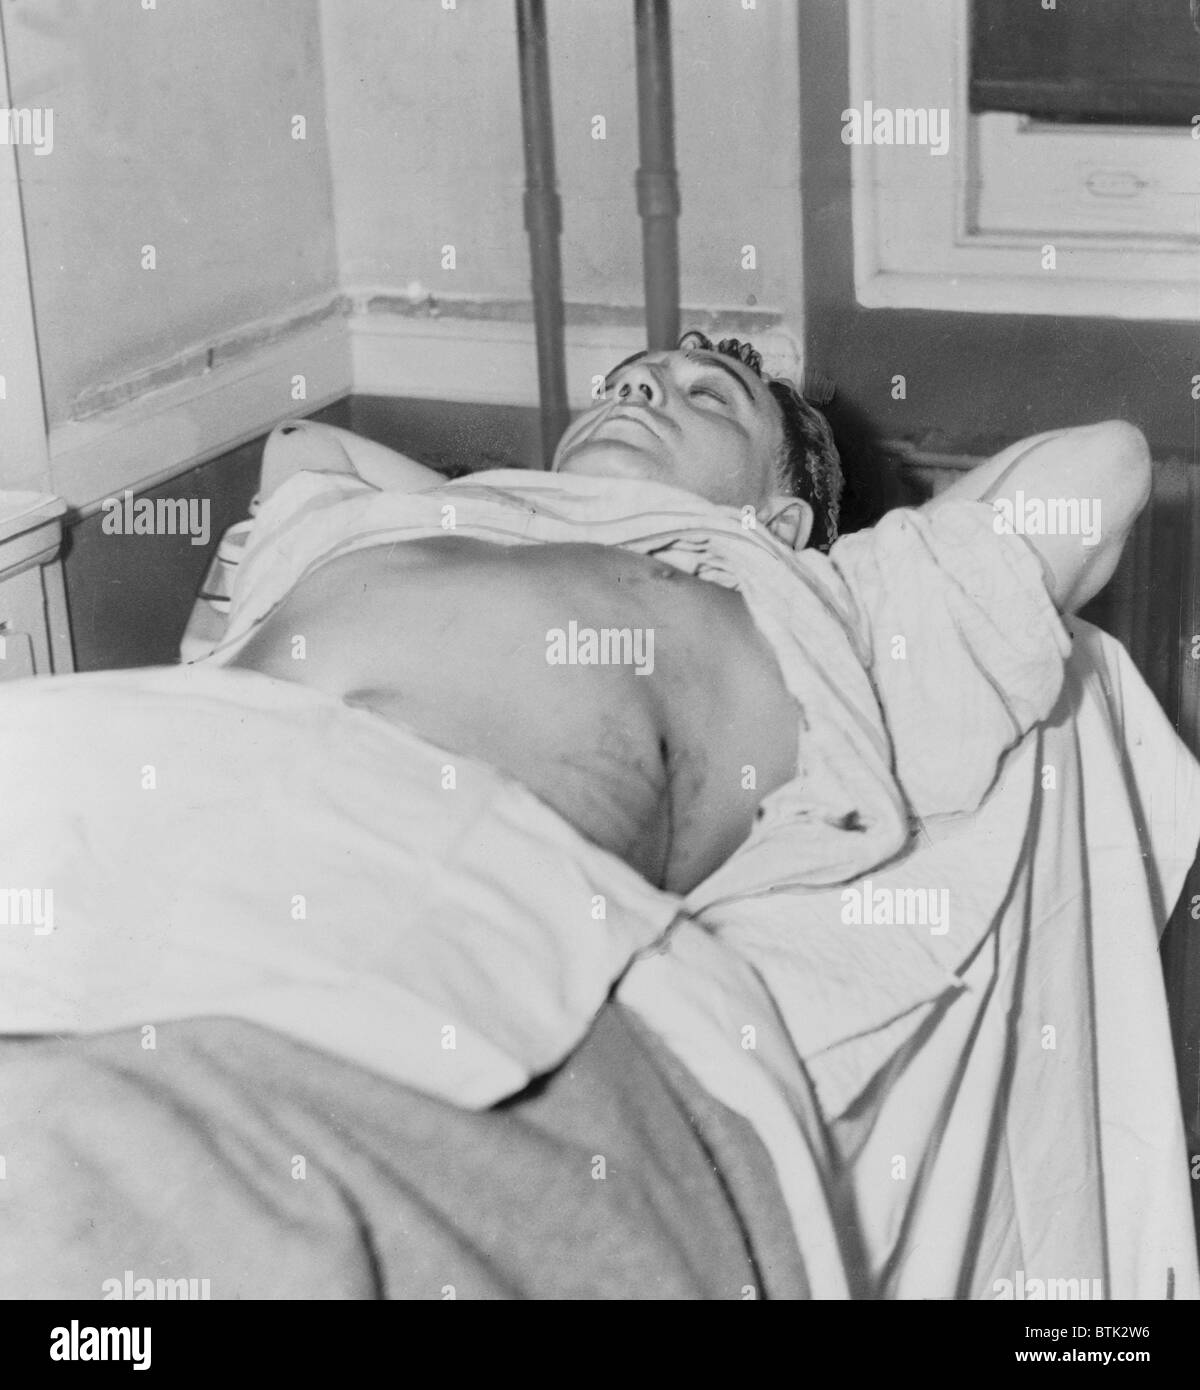 Dutch Schultz, né affaire Flegenheimer Arthur (1902-1935), gisant blessé à l'hôpital de la ville de Newark, New Jersey, après avoir été abattu Banque D'Images